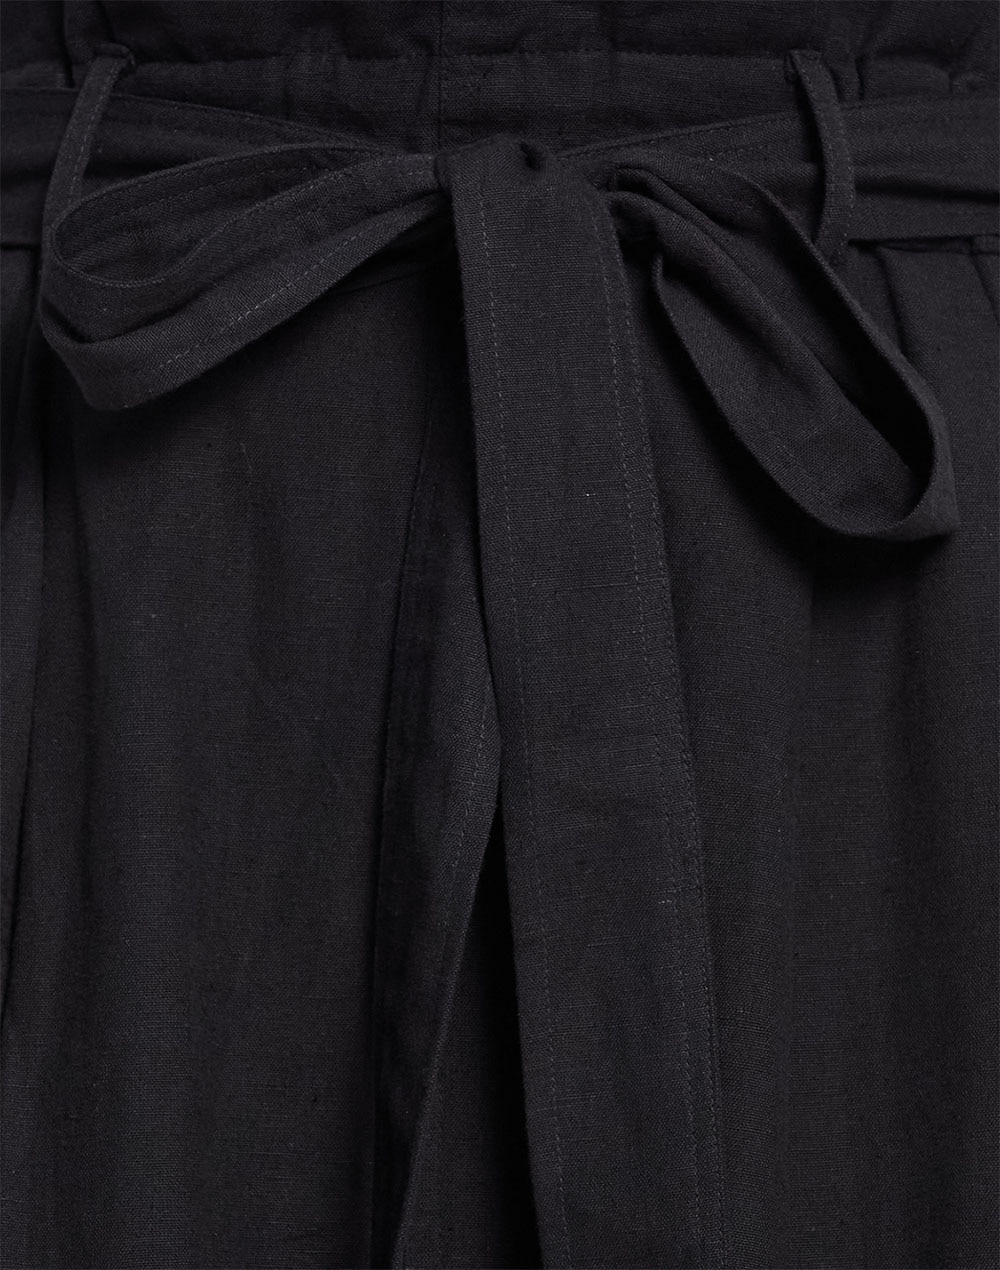 FabNu Black Cotton Linen Skirt